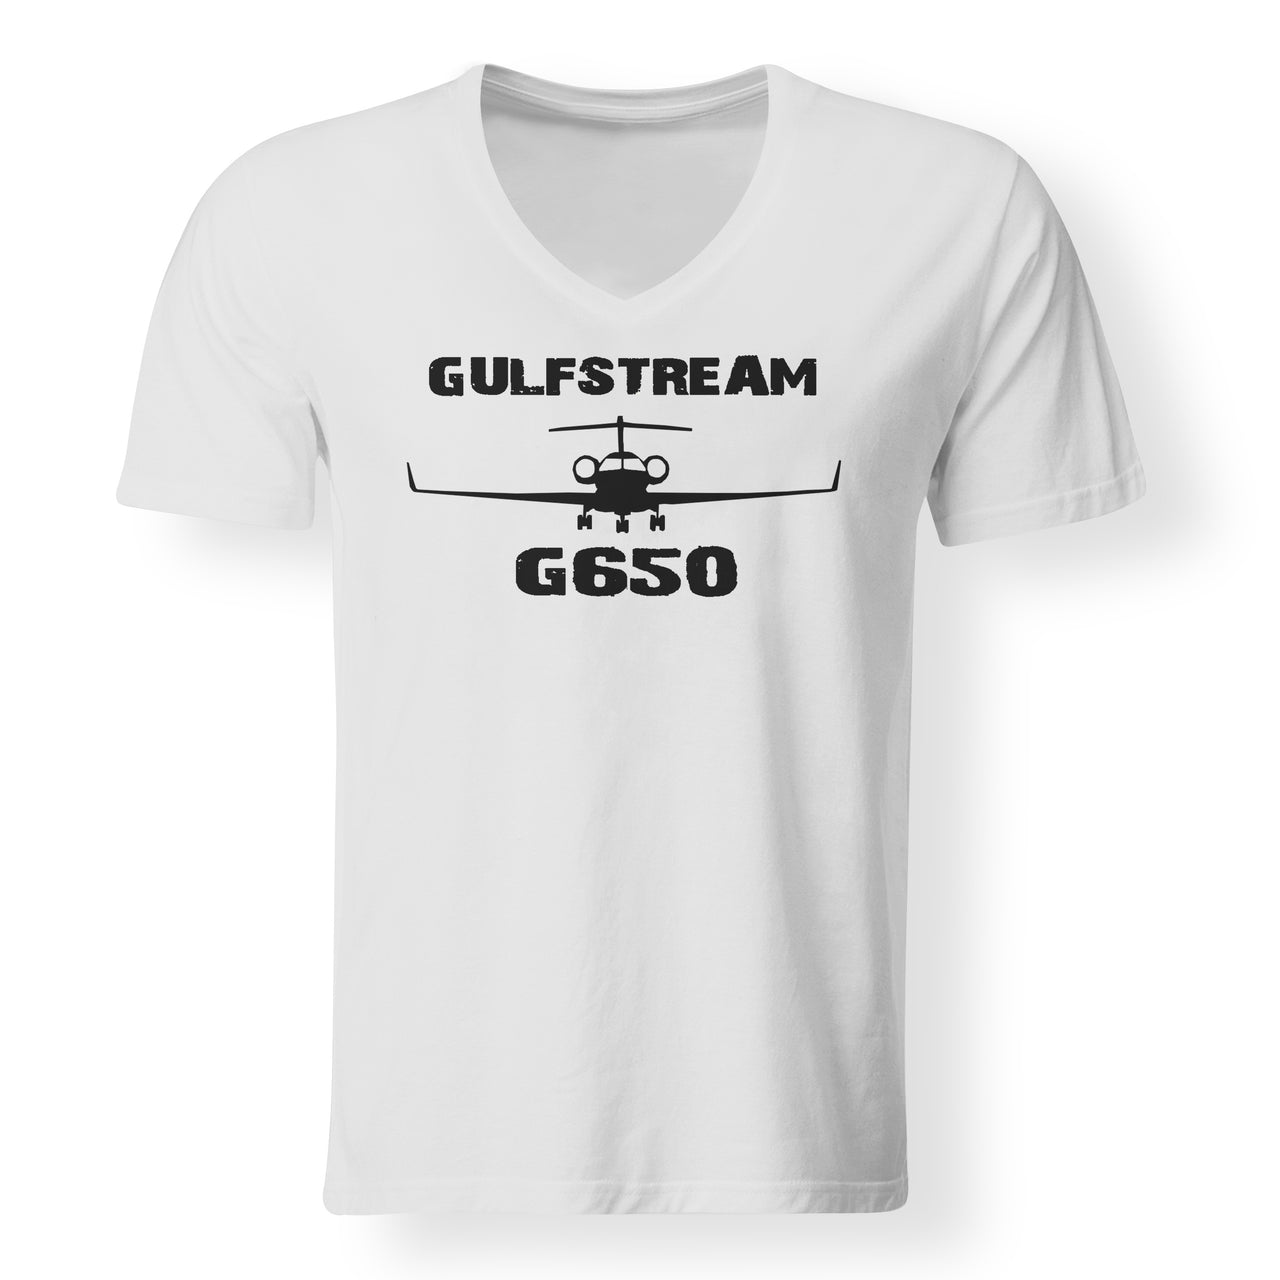 Gulfstream G650 & Plane Designed V-Neck T-Shirts